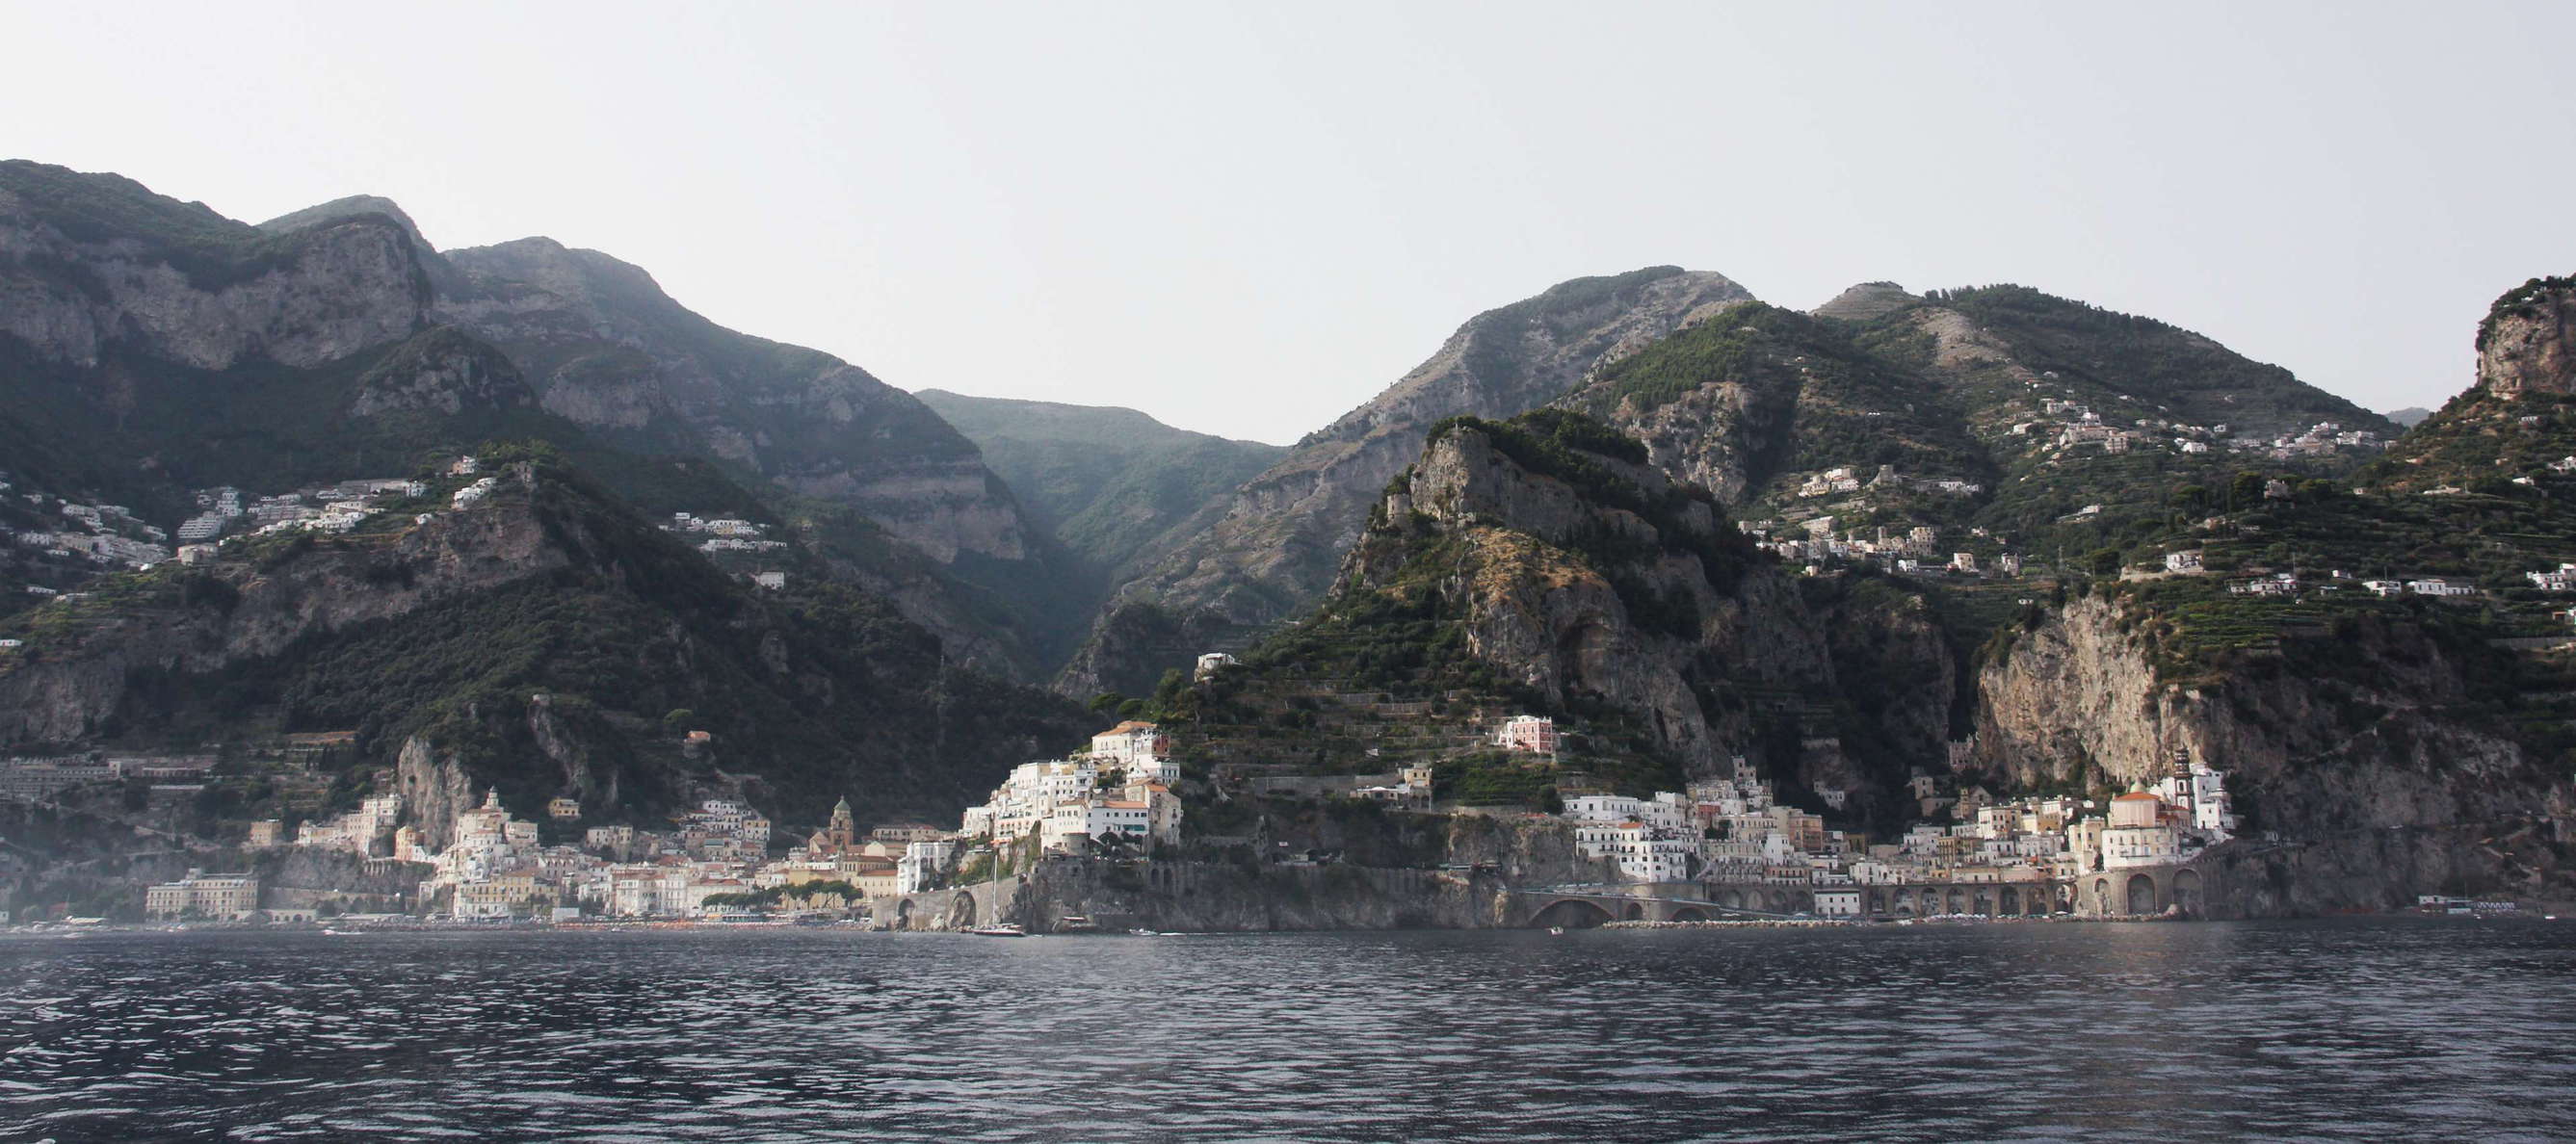 Costiera Amalfitana | Amalfi and Atrani